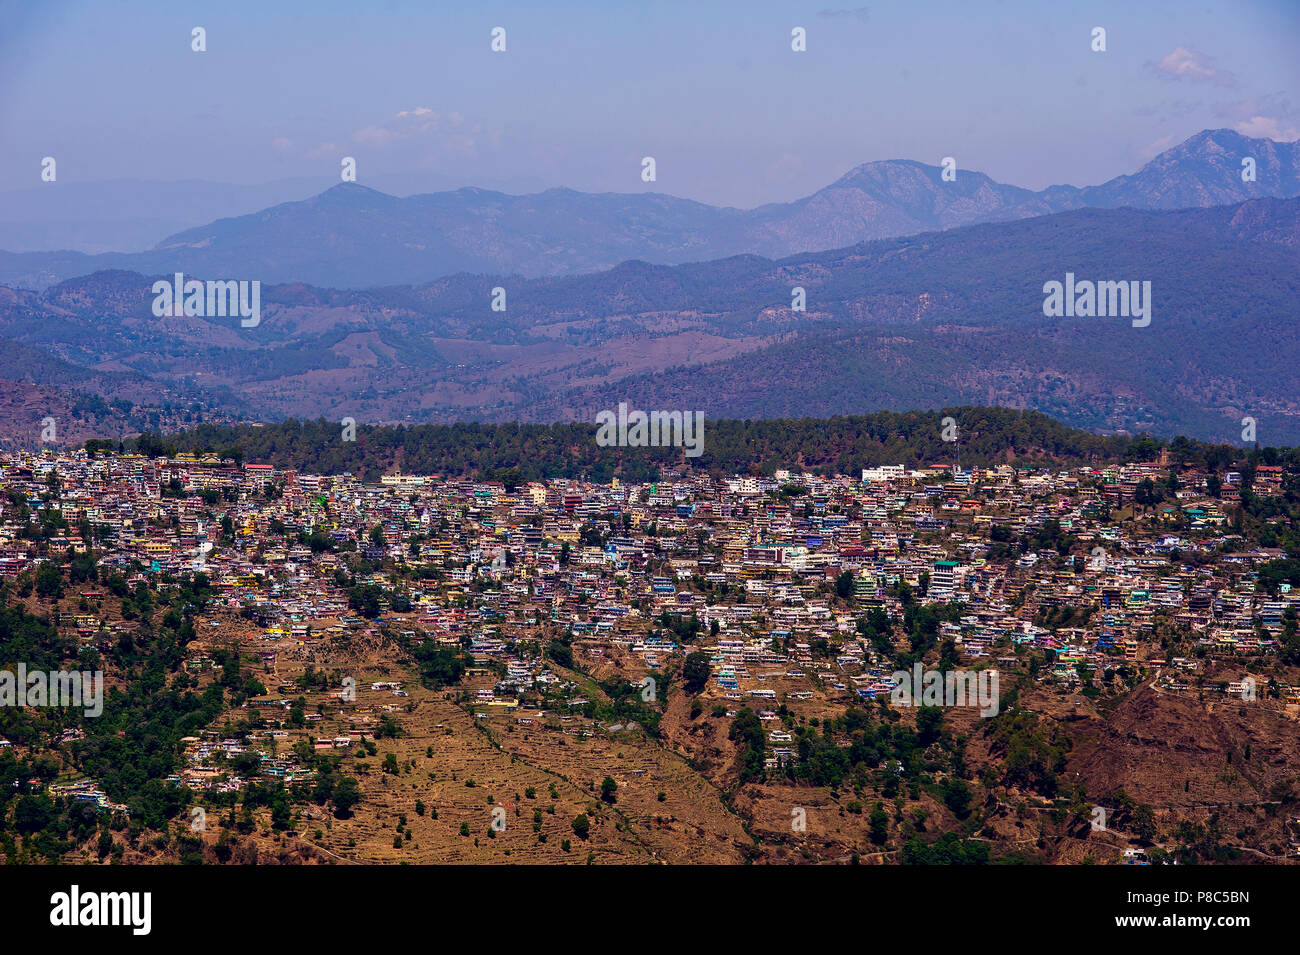 Almora town on Kumaon Hills, Uttarakhand, India Stock Photo